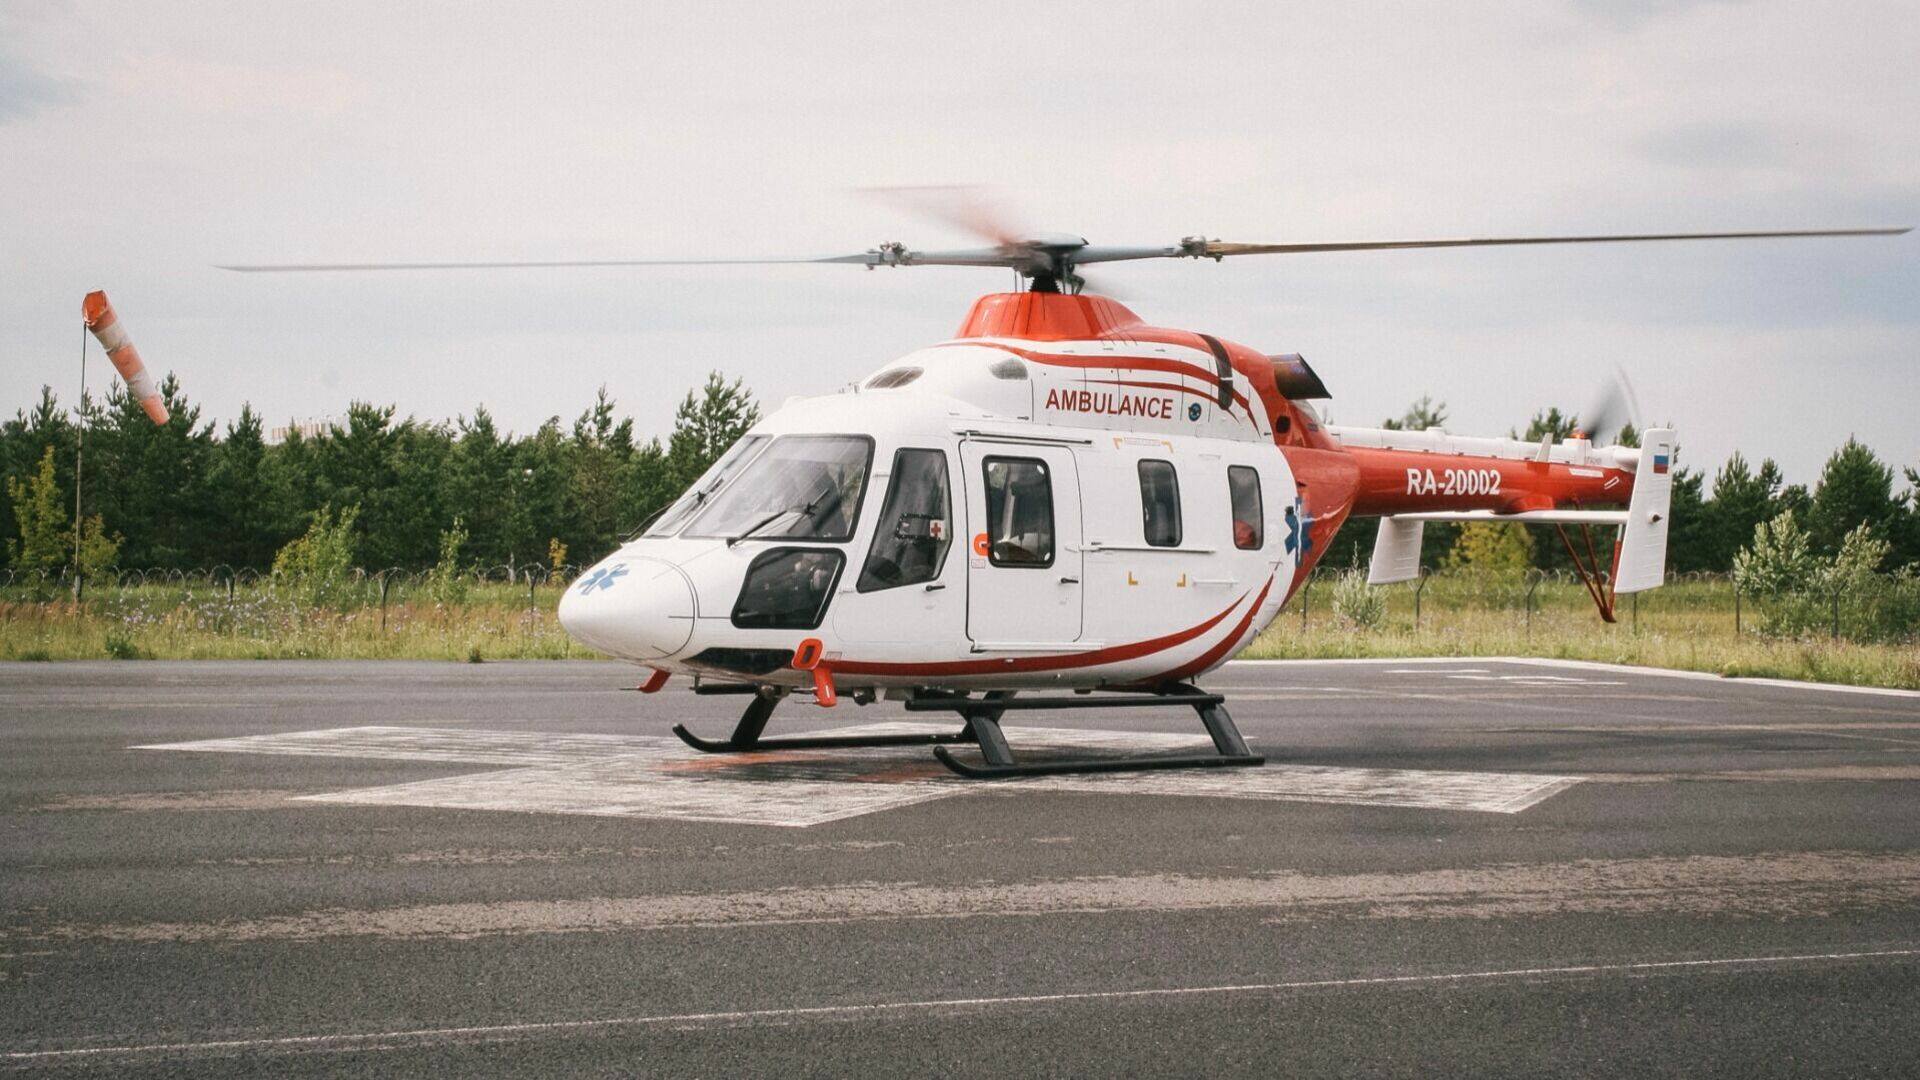 42 млн рублей стоит доставка пациентов в больницы вертолетами в Челябинской области